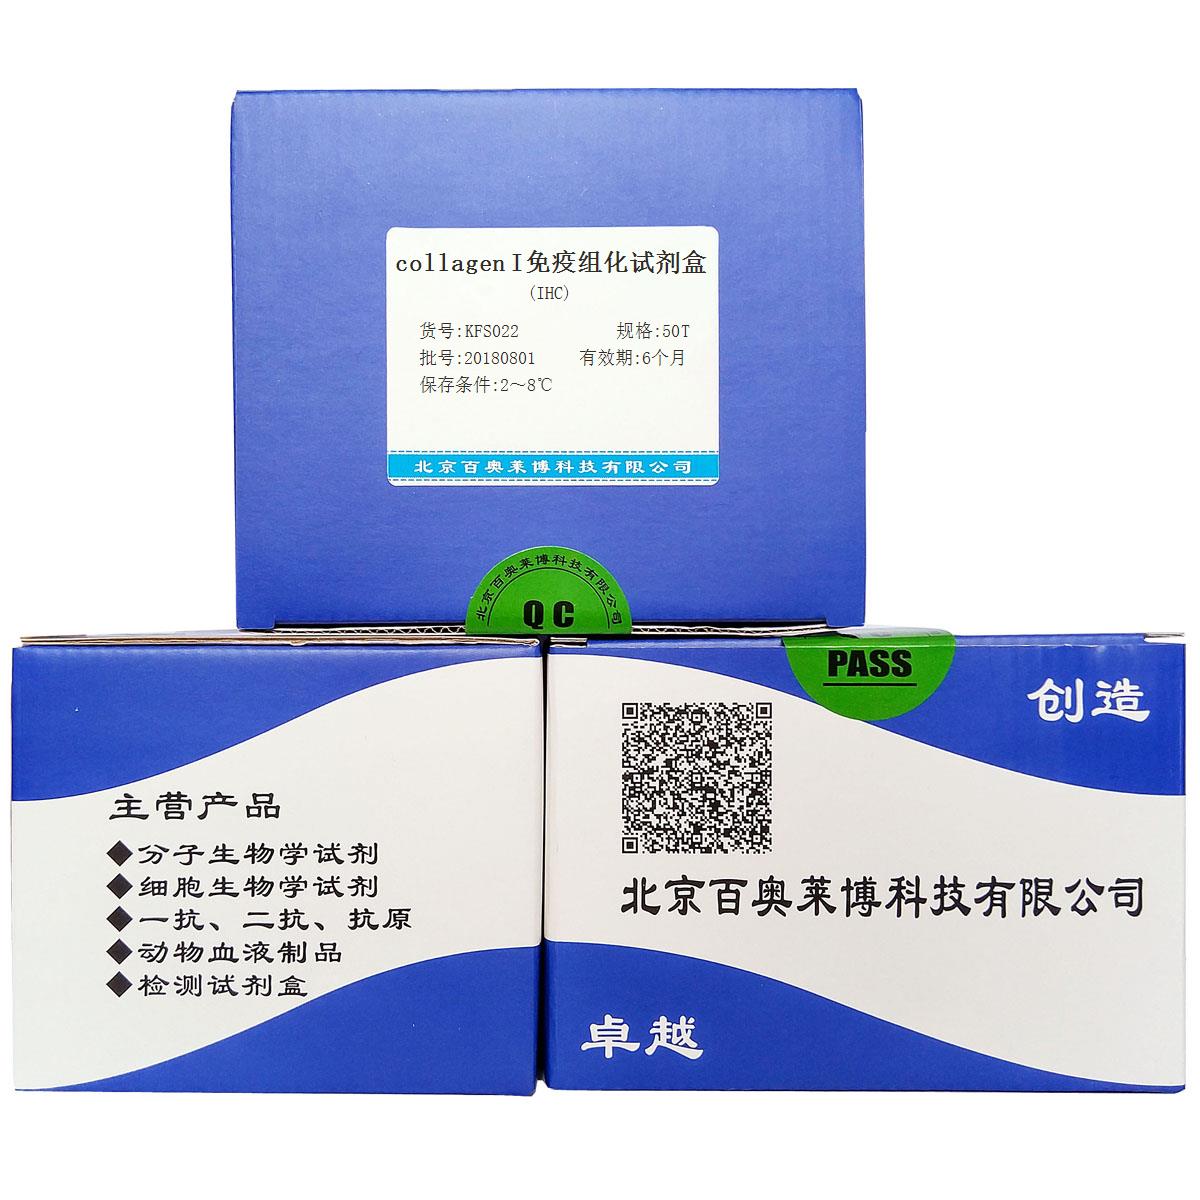 collagen I免疫组化试剂盒(IHC)